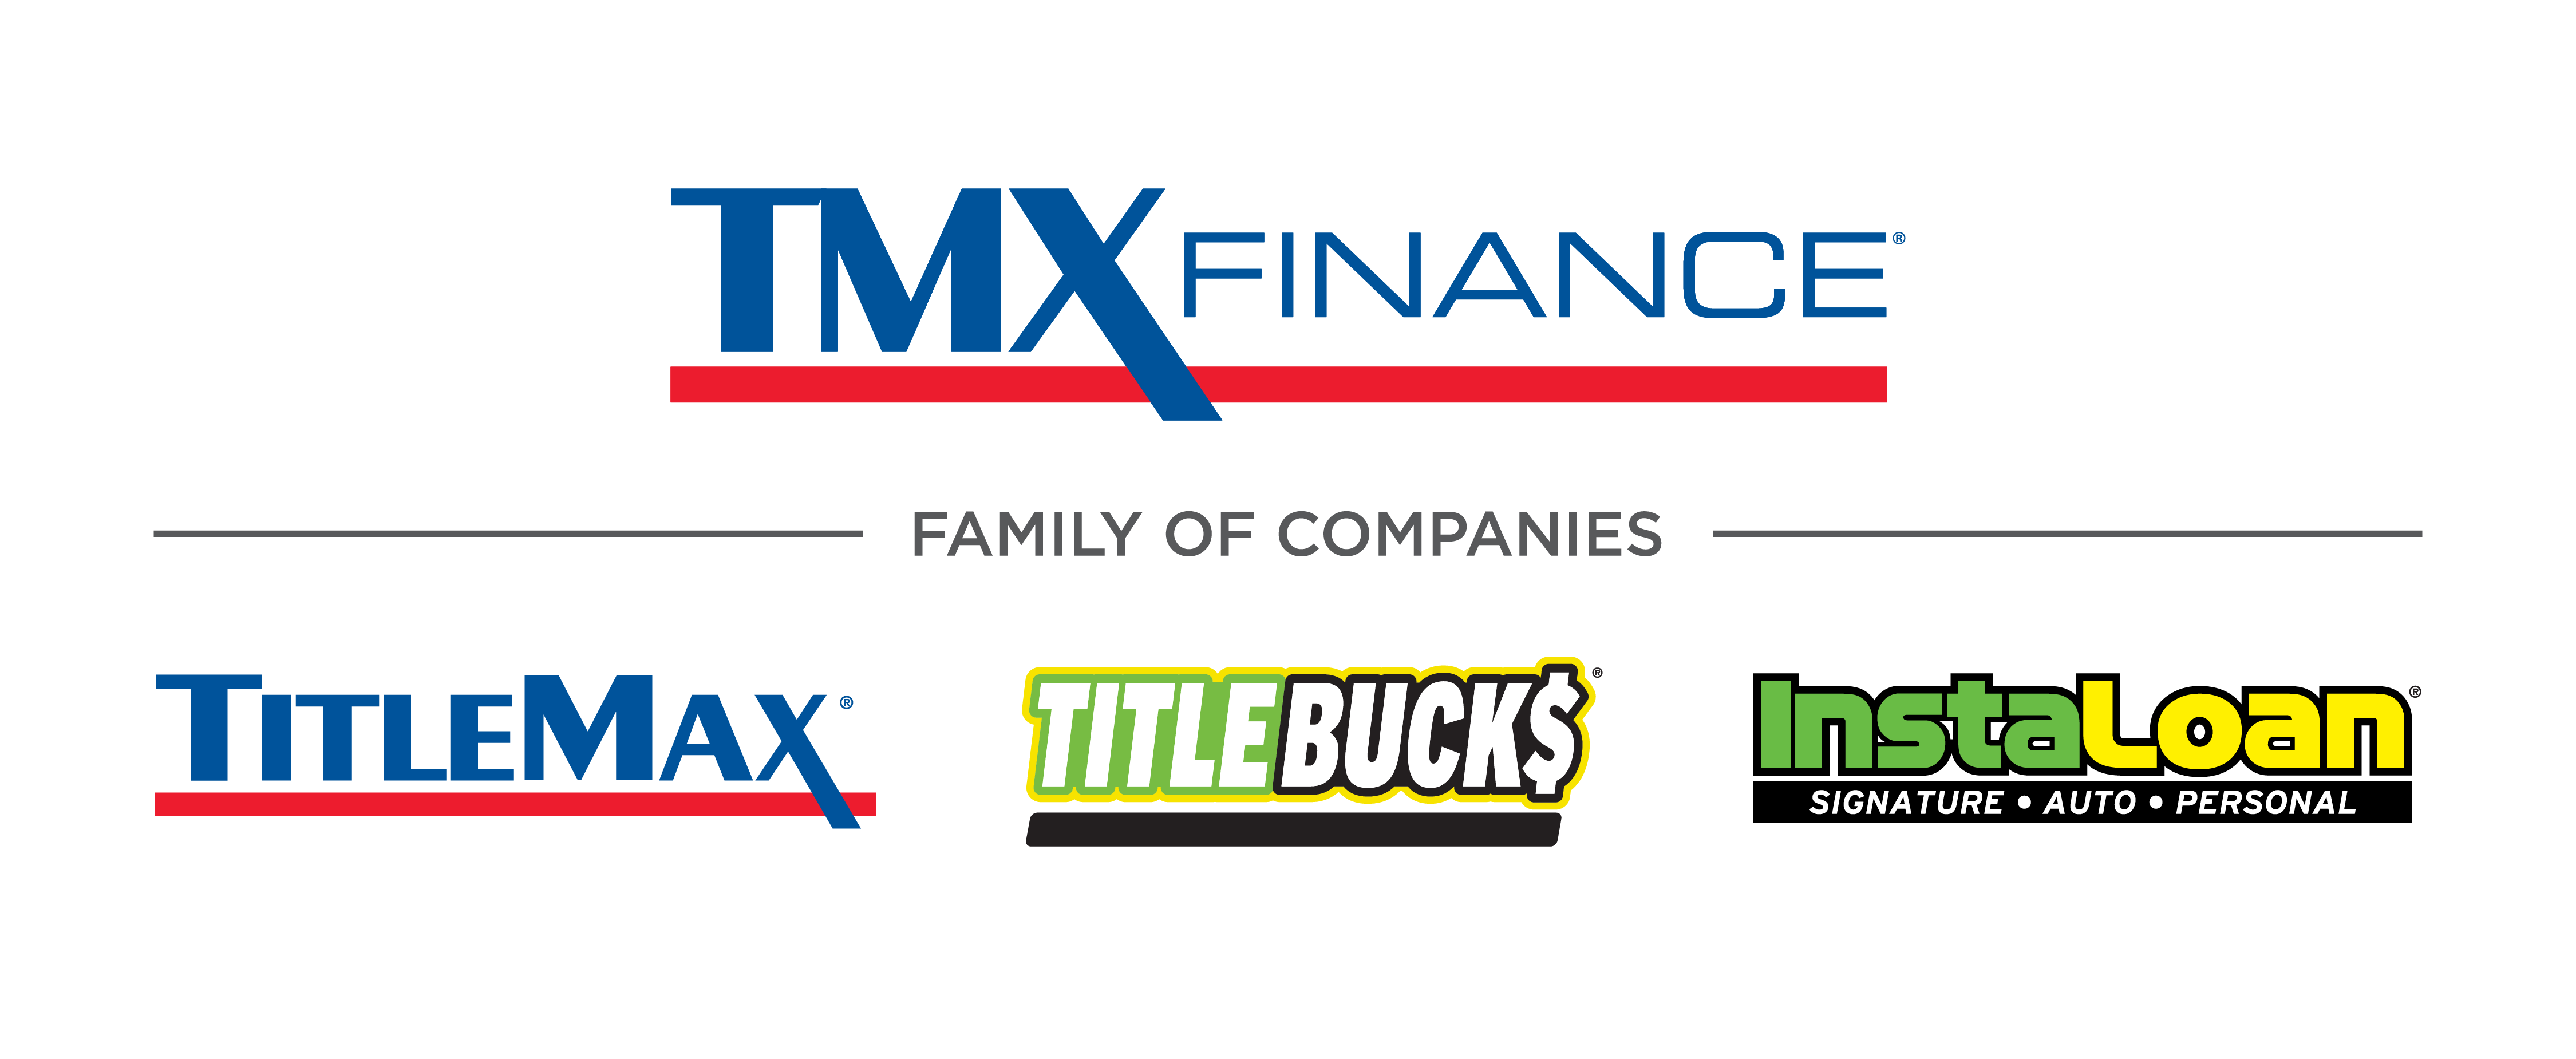 TMX Finance Family of Companies Company Logo